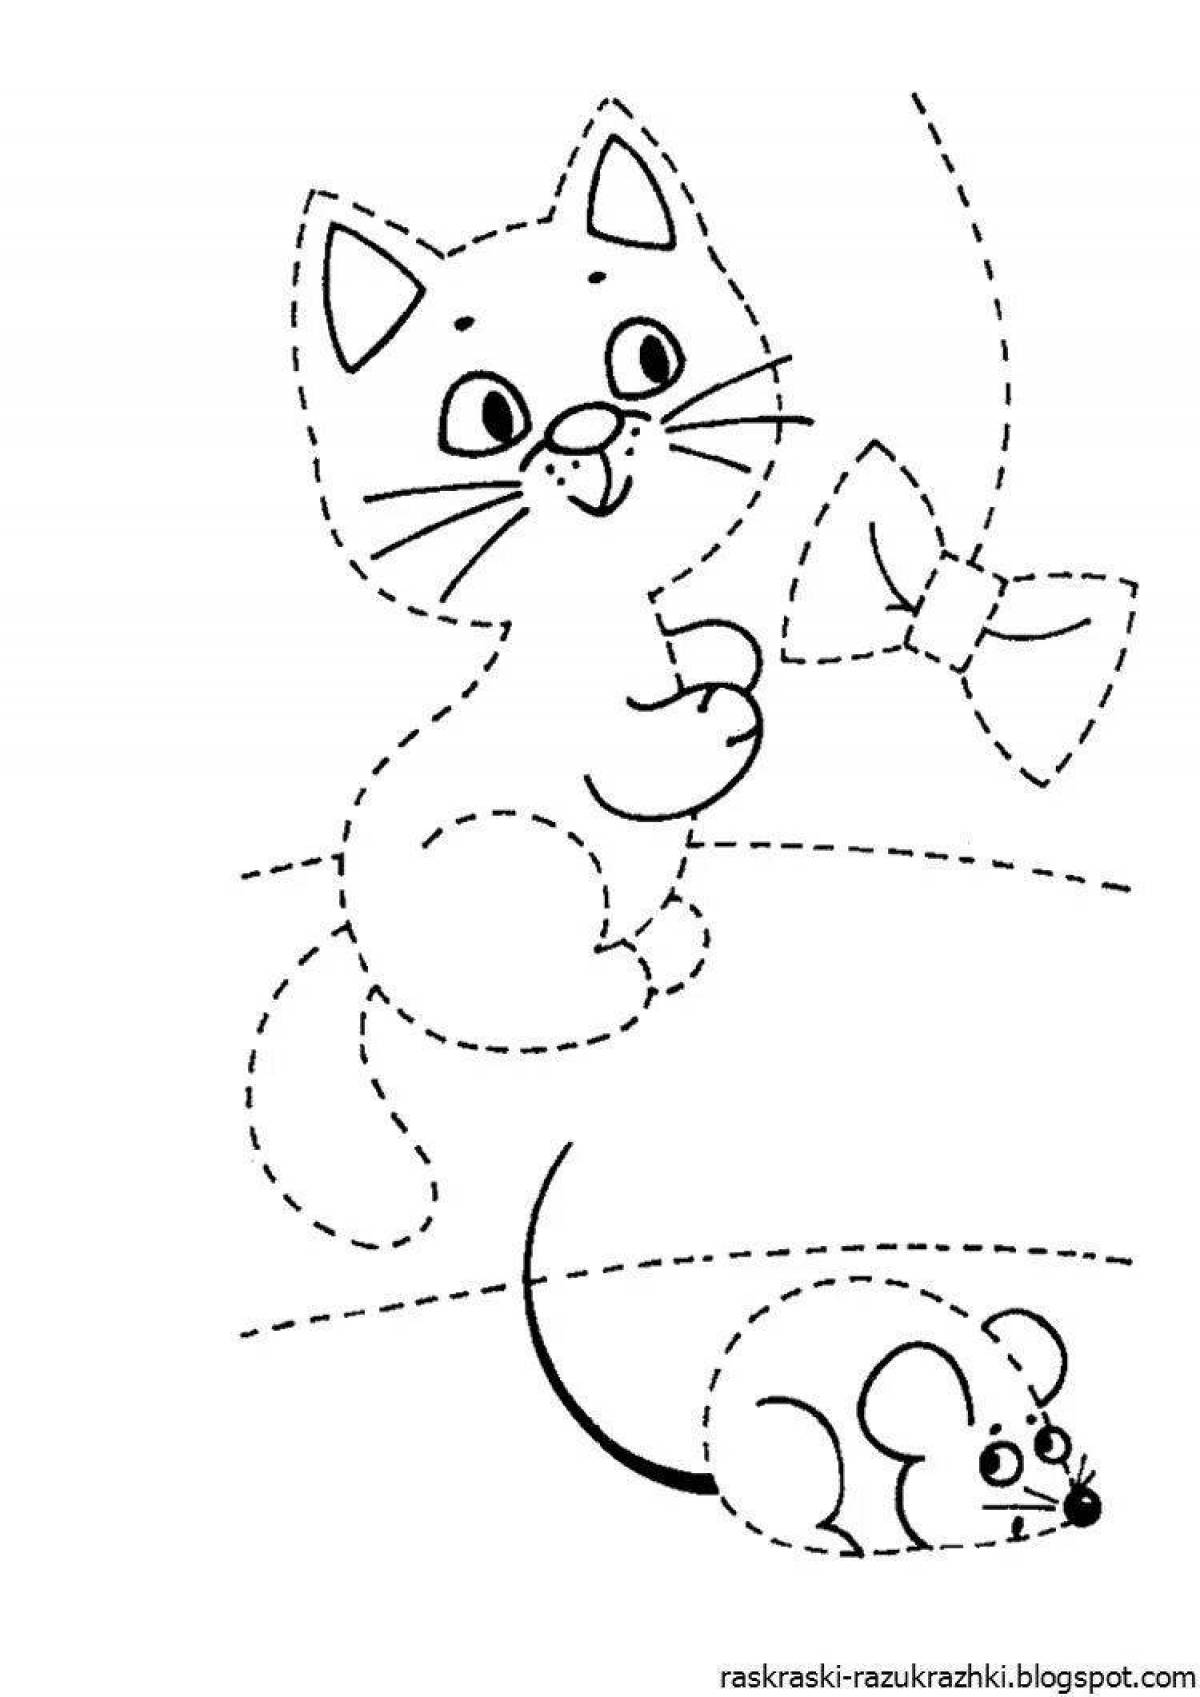 Умная раскраска кошка для детей 4-5 лет